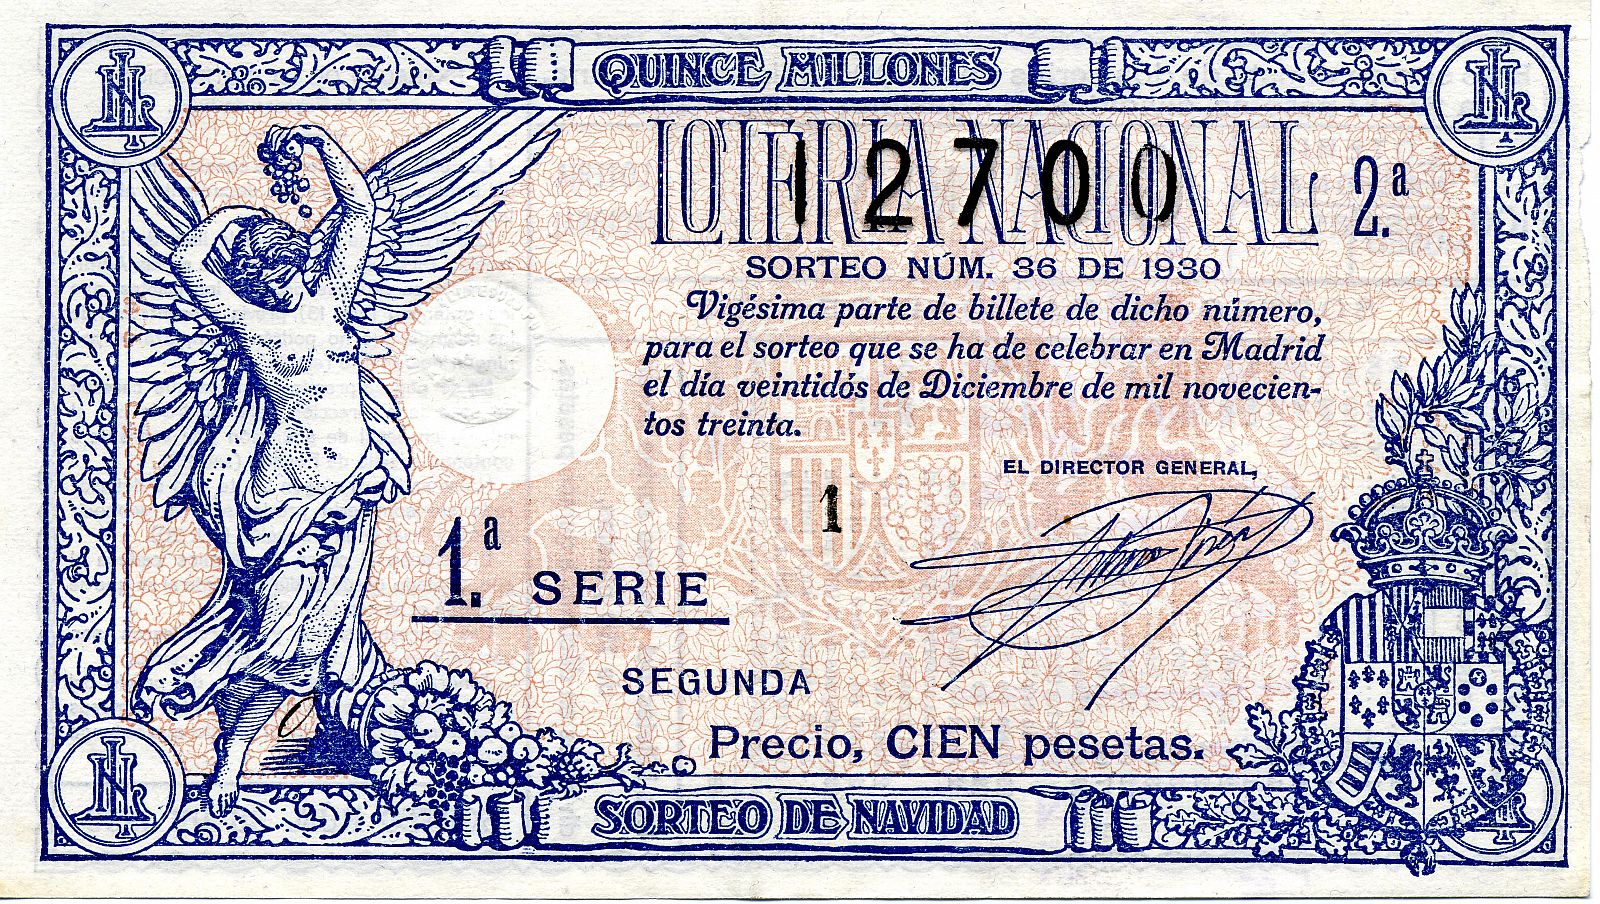 Los diferentes diseños de los décimos y su posterior impresión se realizan en la Fábrica Nacional de Moneda y Timbre.